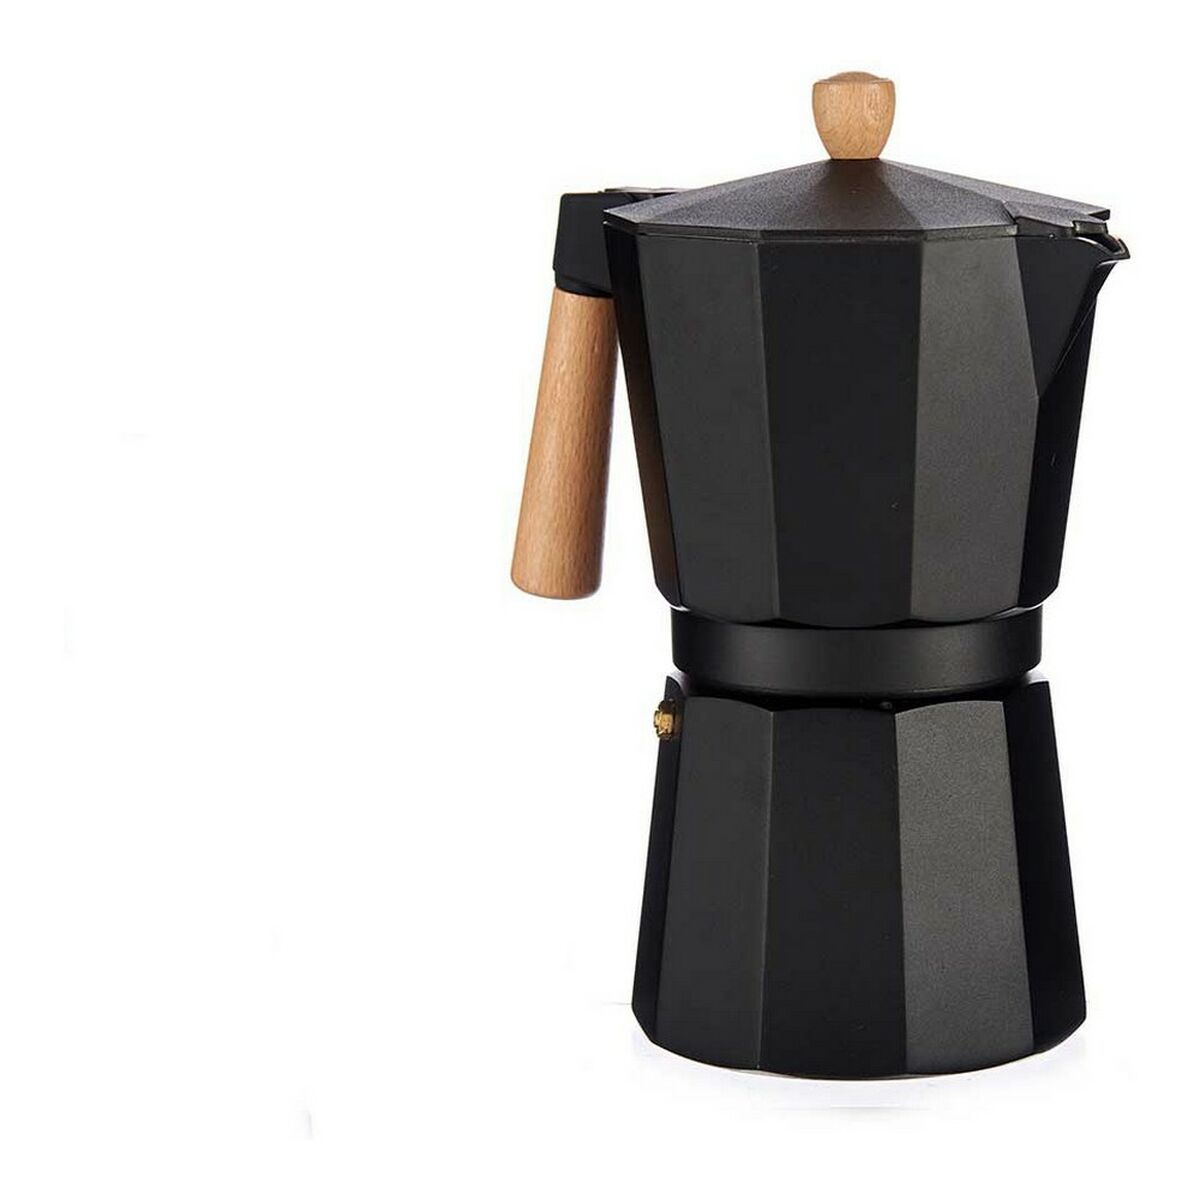 Cafetera 9 Tazas Black Coffee Quid Aluminio Inducción — Qechic